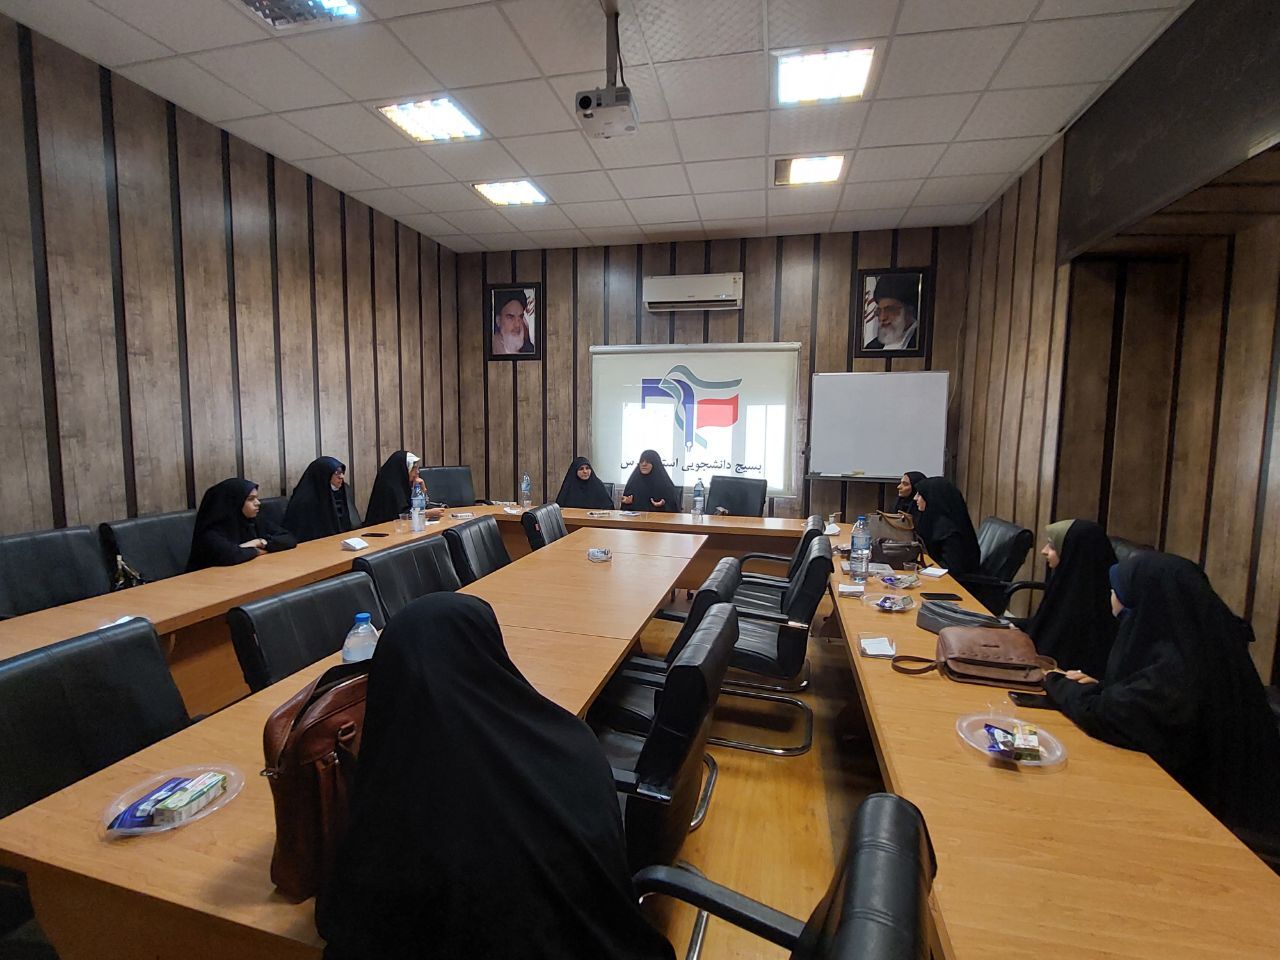  عضو شورای شهر شیراز: طرح جامع عفاف و حجاب در شیراز دار حال آماده سازی است